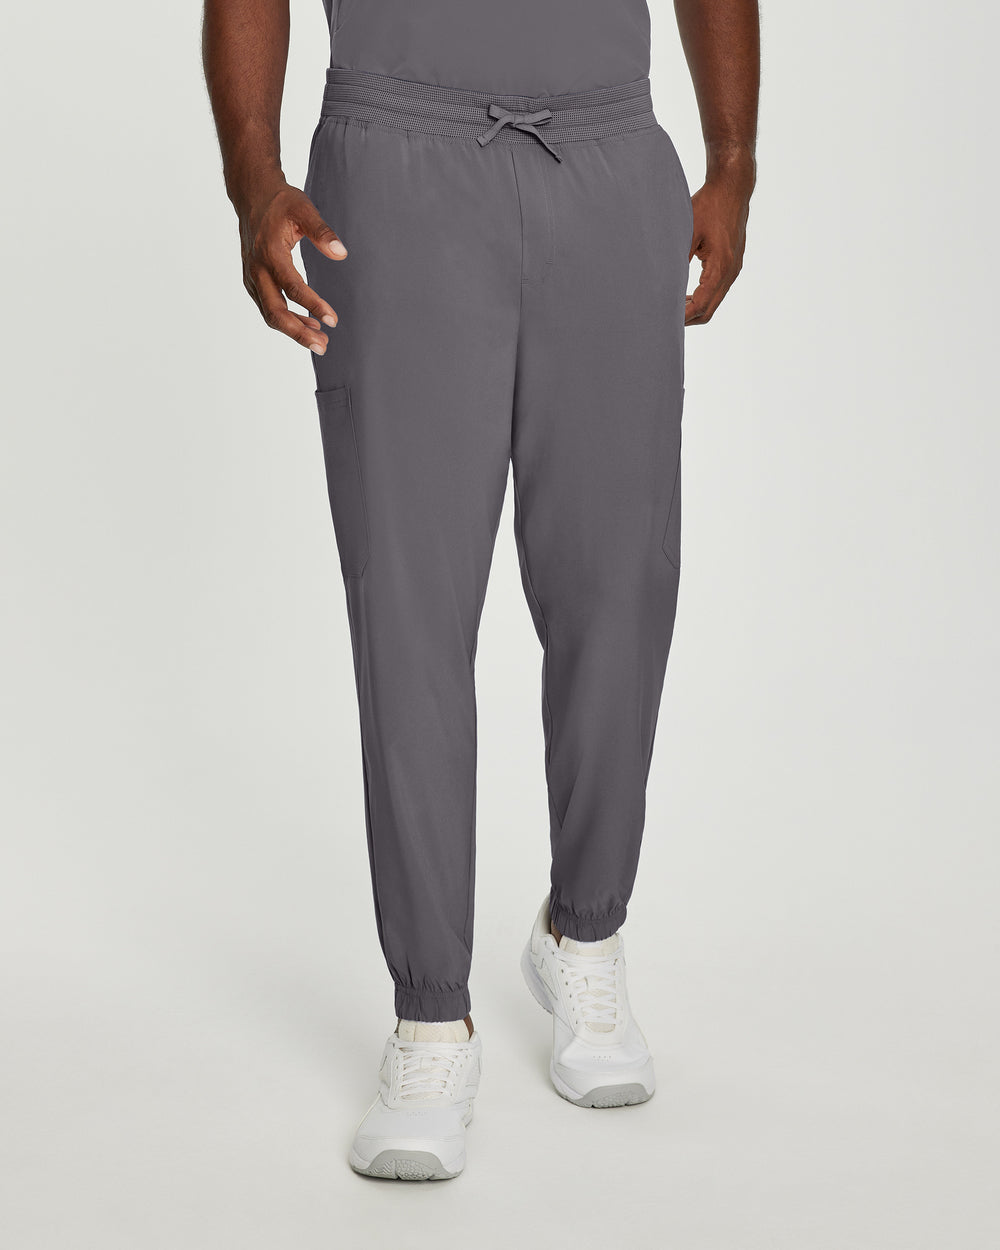 Men's jogger pants - FIT - 223T tall